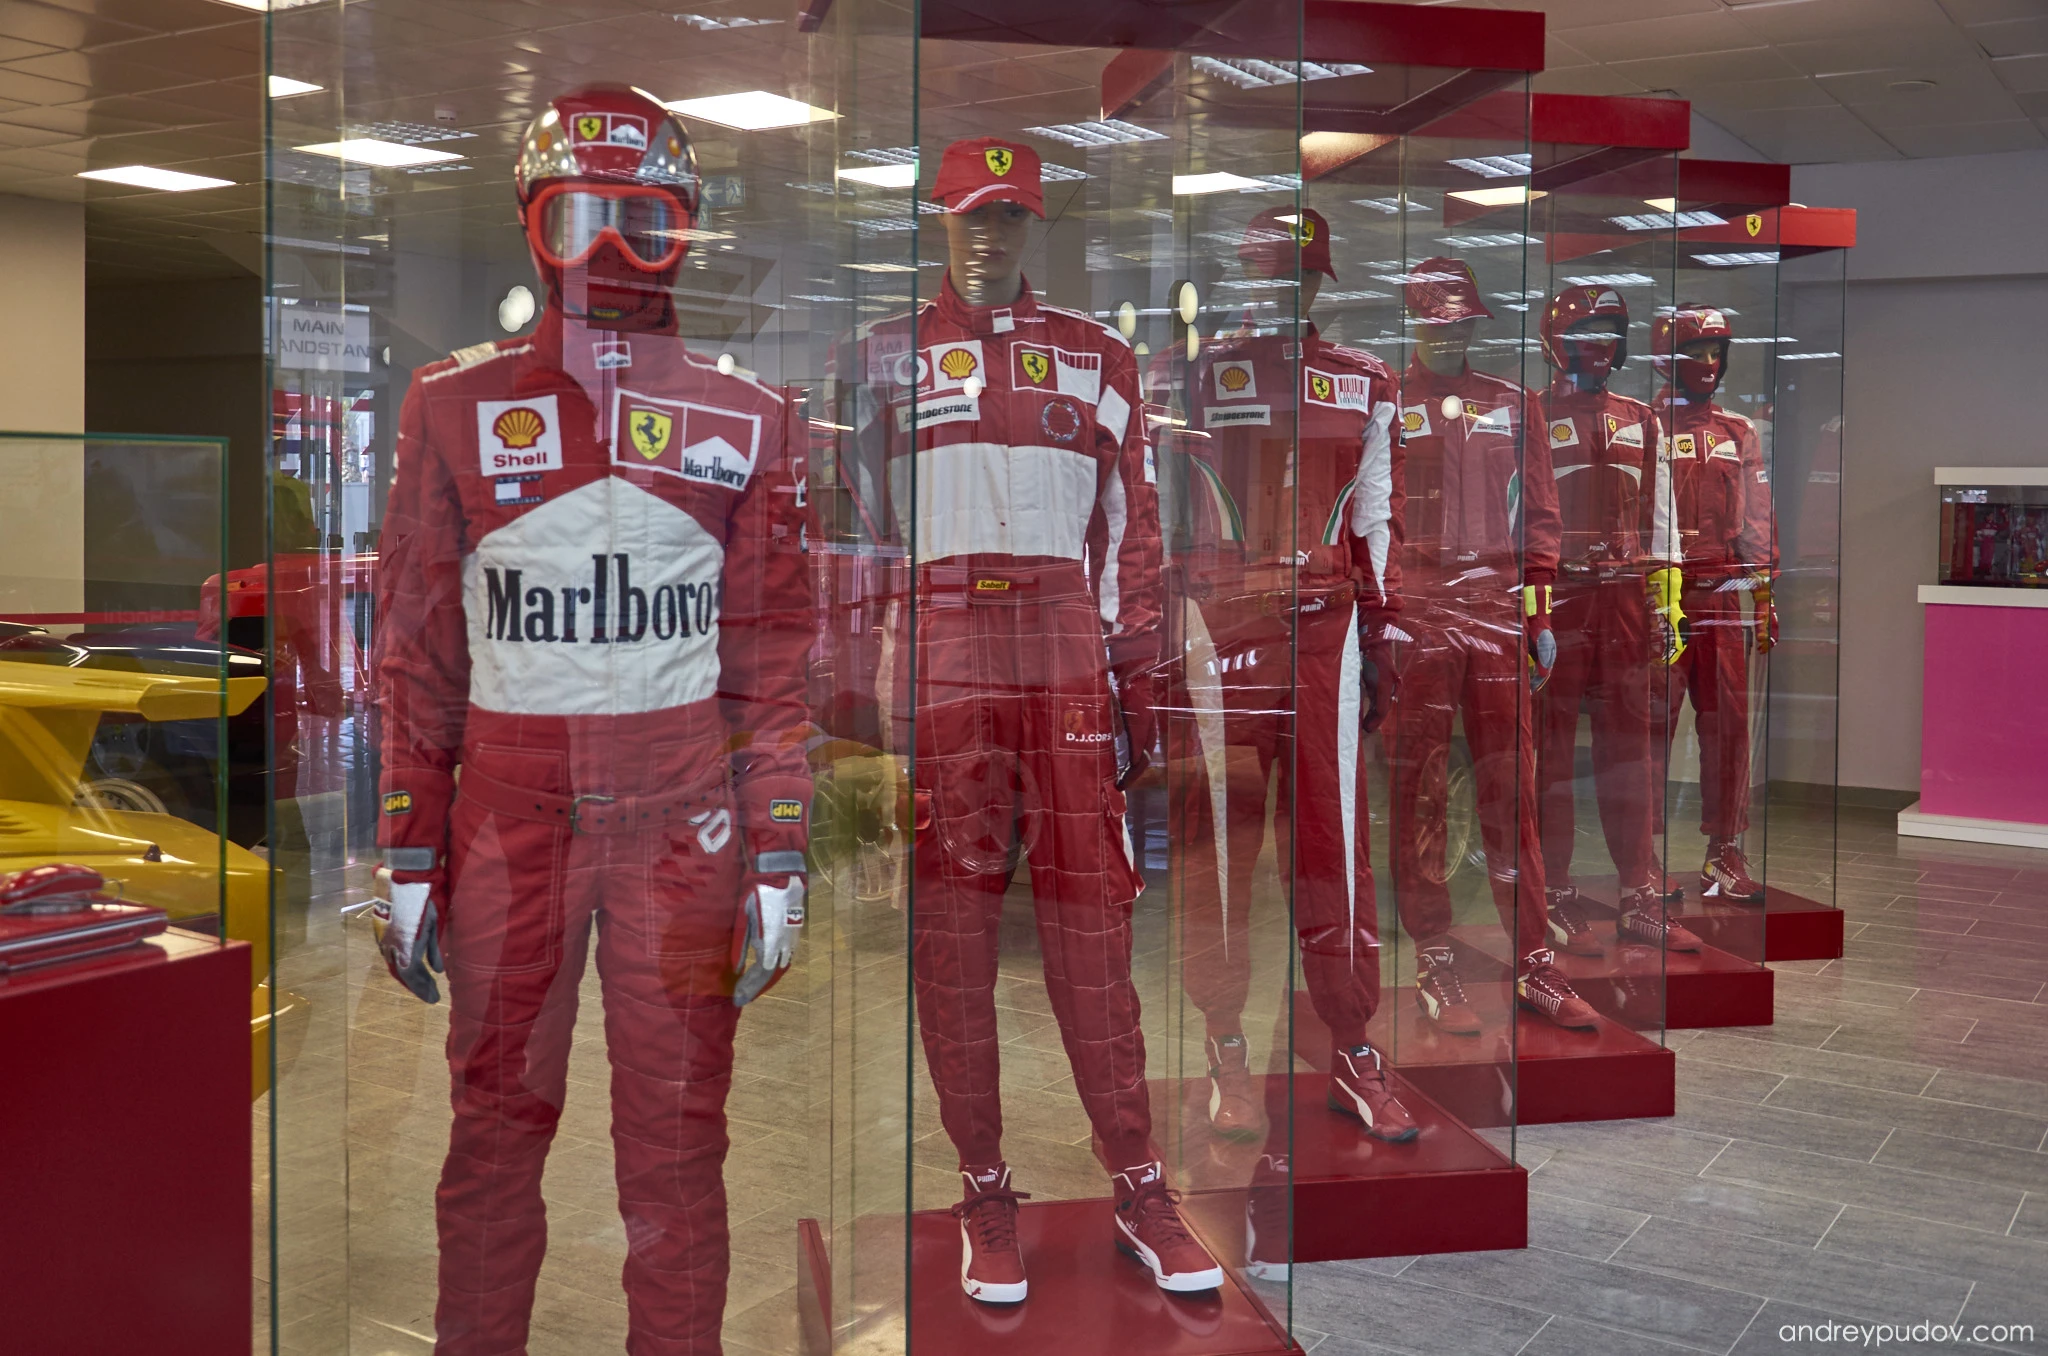 Scuderia Ferrari racing suits at Autosport Museum in the main tribune of Sochi Autodrom.